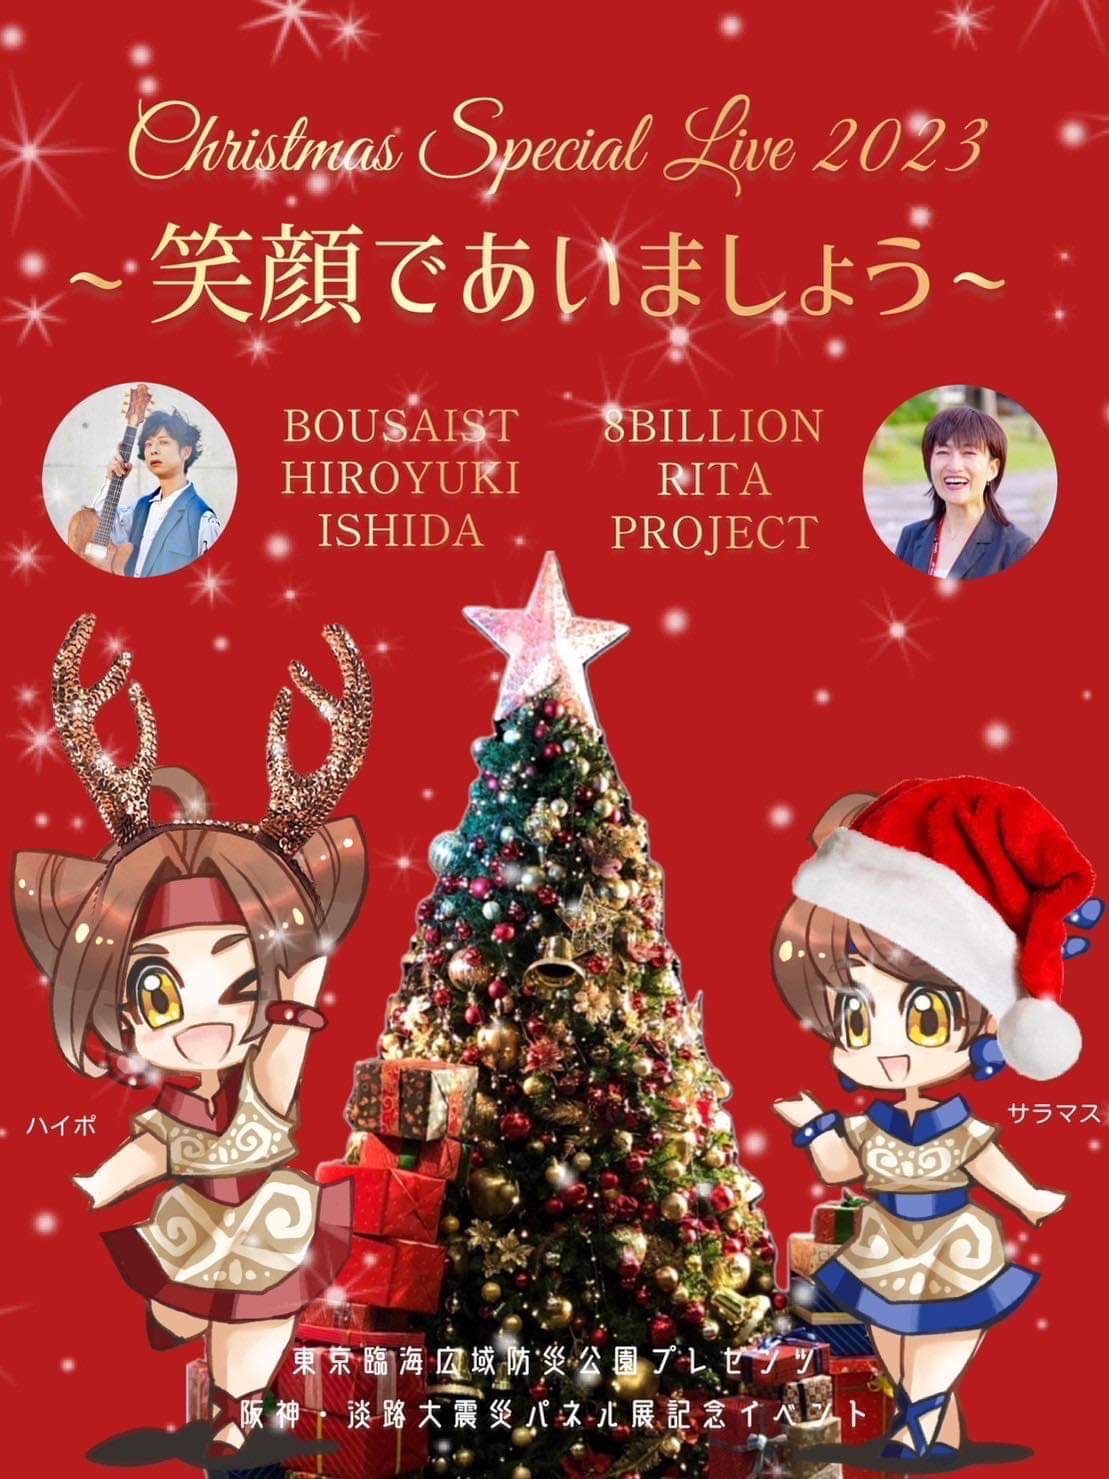 そなエリア東京「Christmas Special Live」